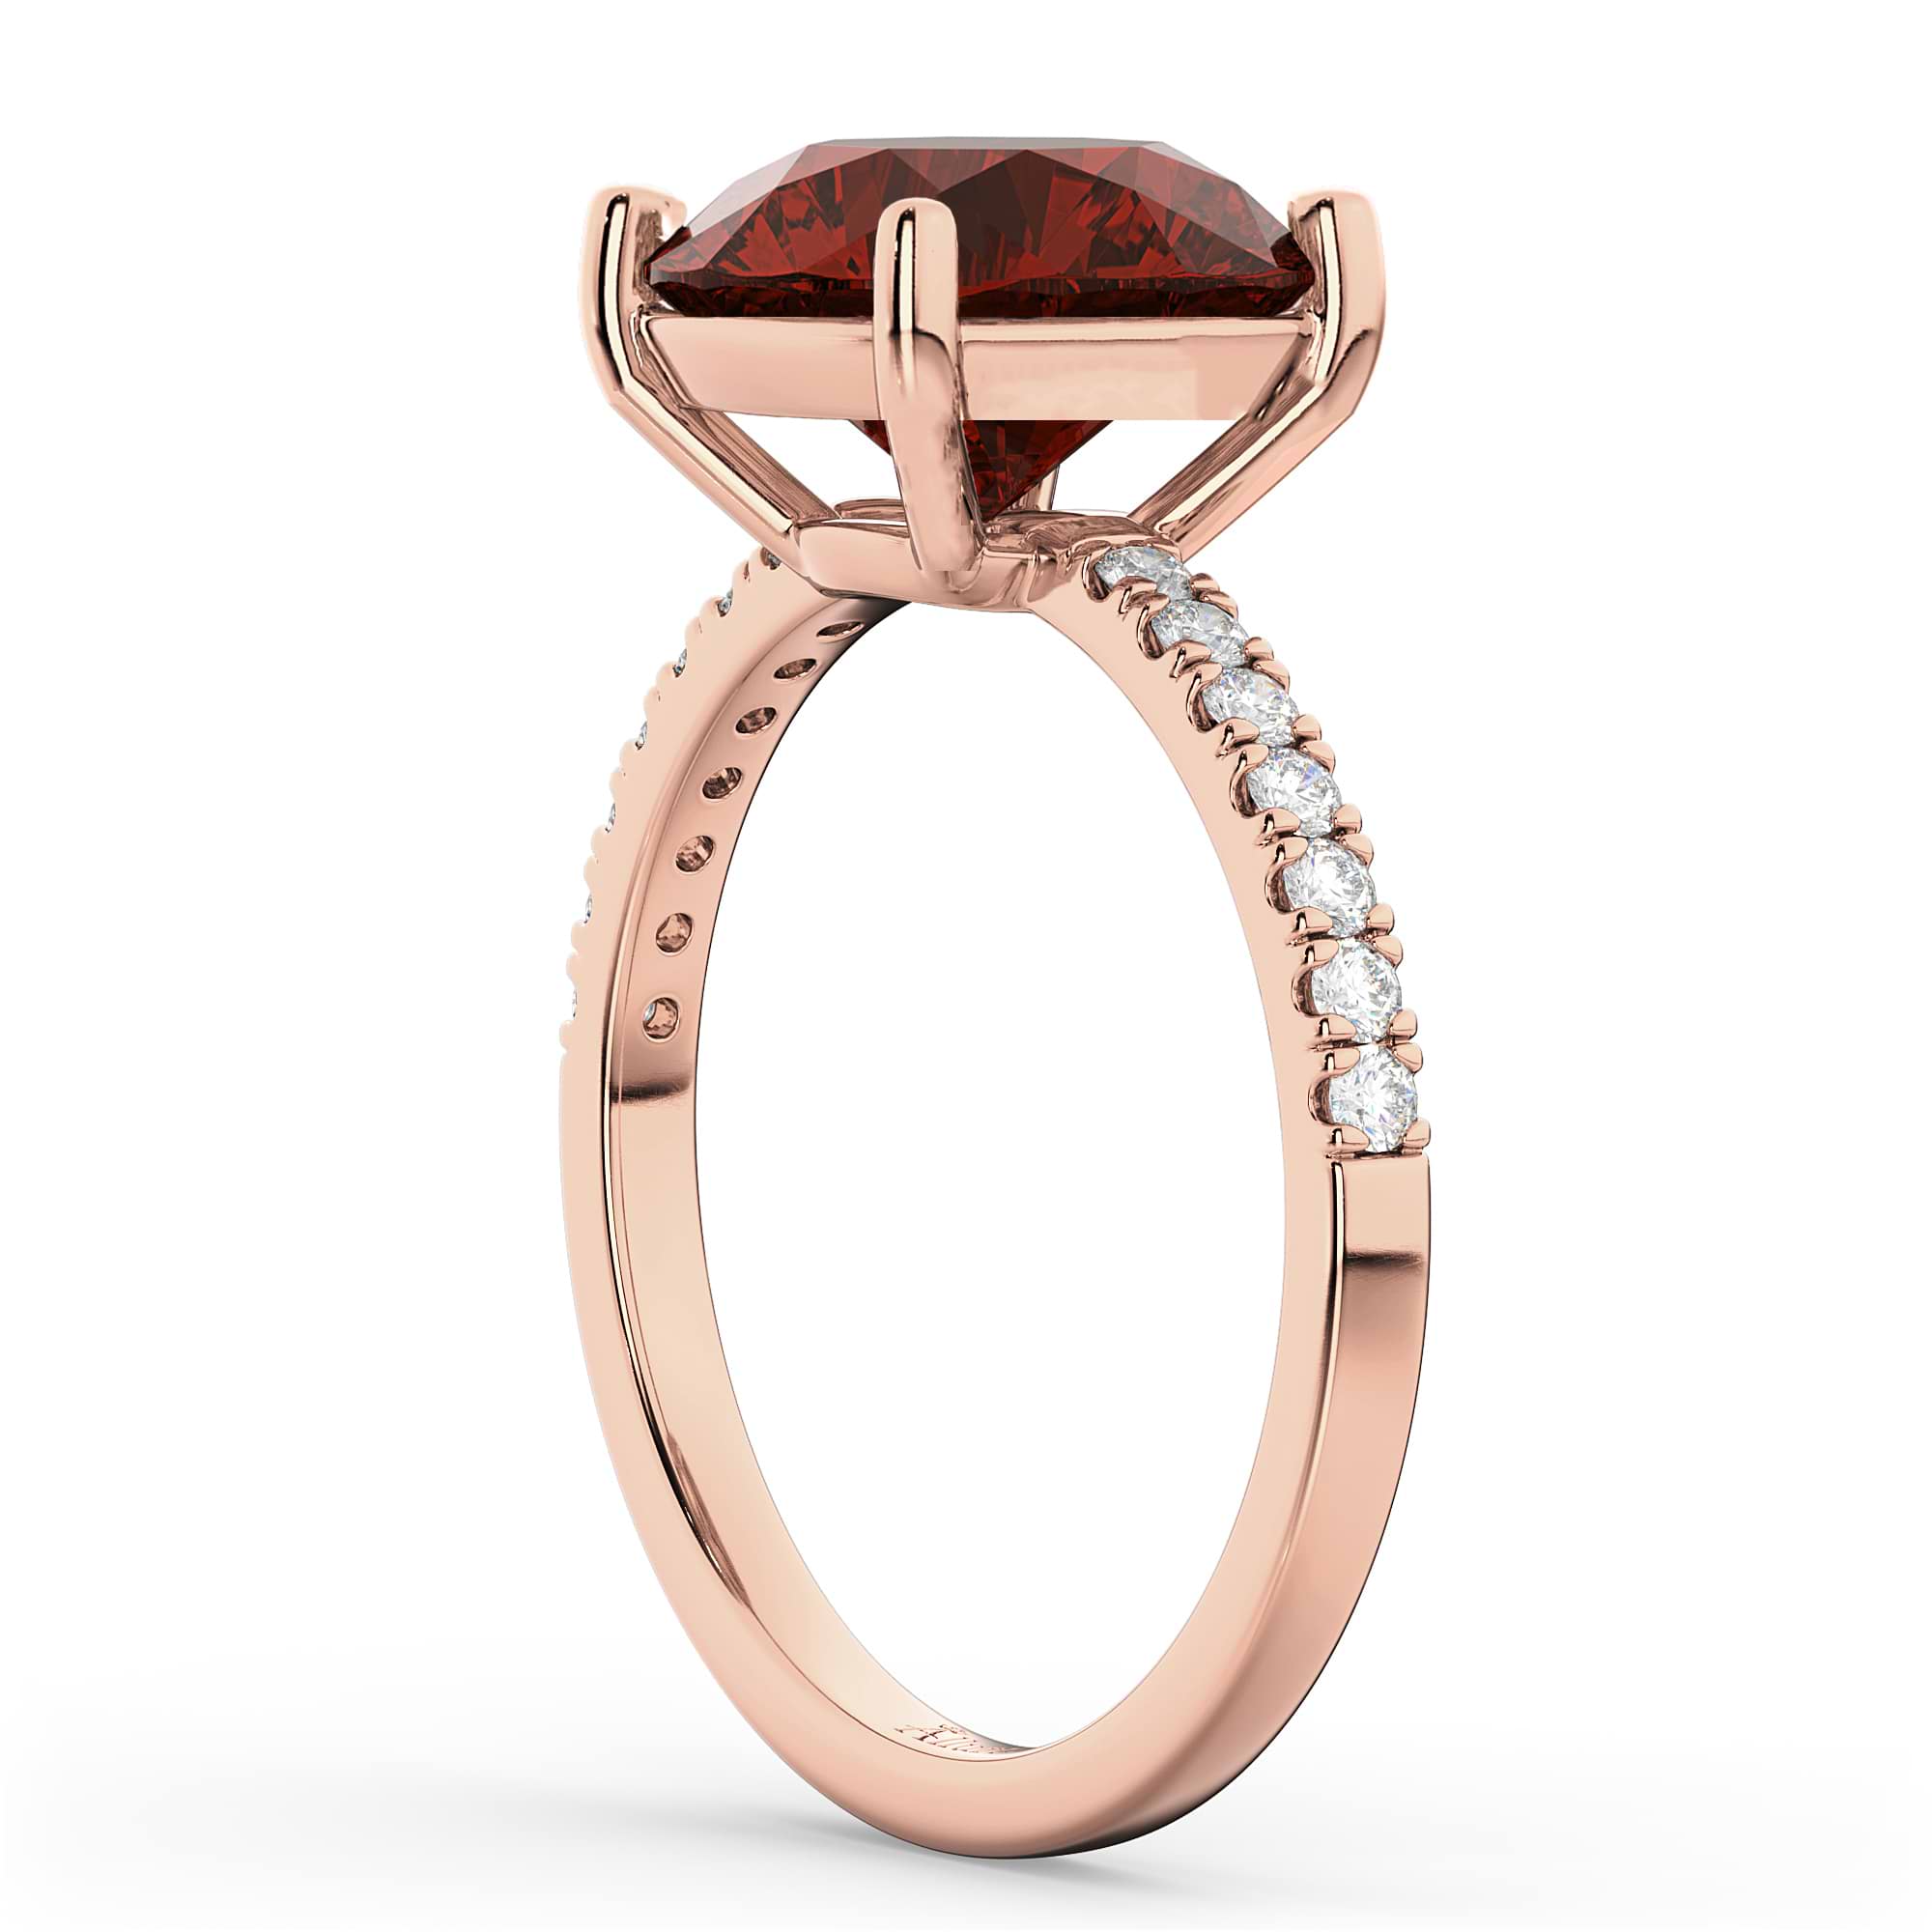 Garnet & Diamond Engagement Ring 14K Rose Gold 2.71ct